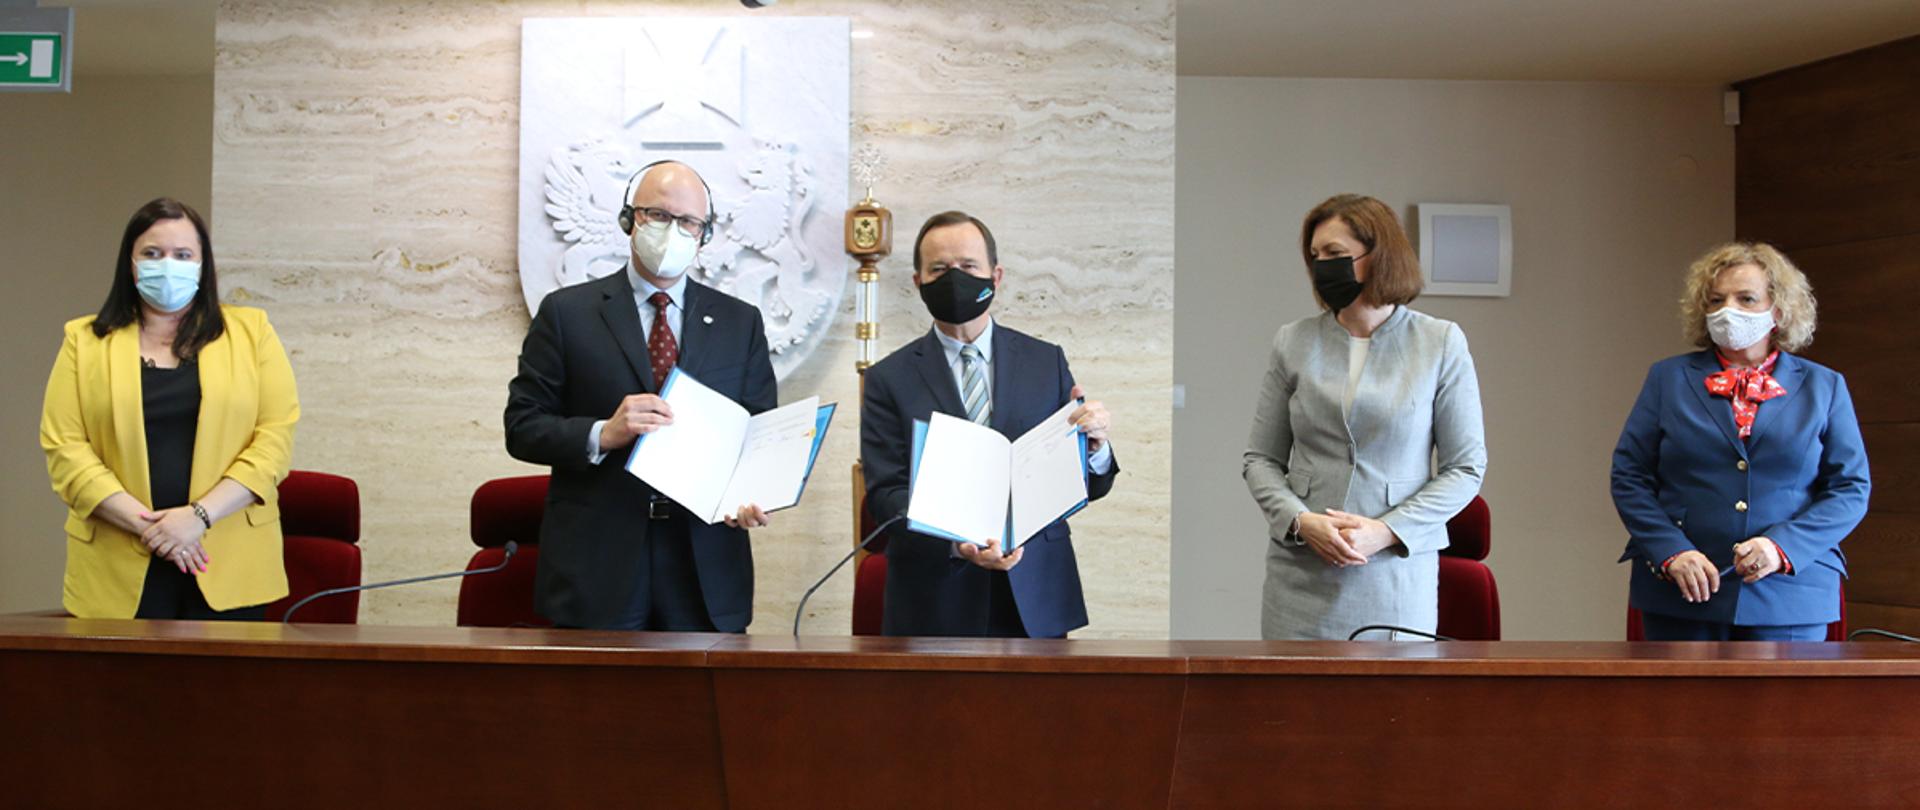 W pomieszczeniu pięć osób stoi za długim stołem. Pierwsza od lewej wiceminister Małgorzata Jarosińska-Jedynak. Dwóch mężczyzn prezentuje dokumenty.